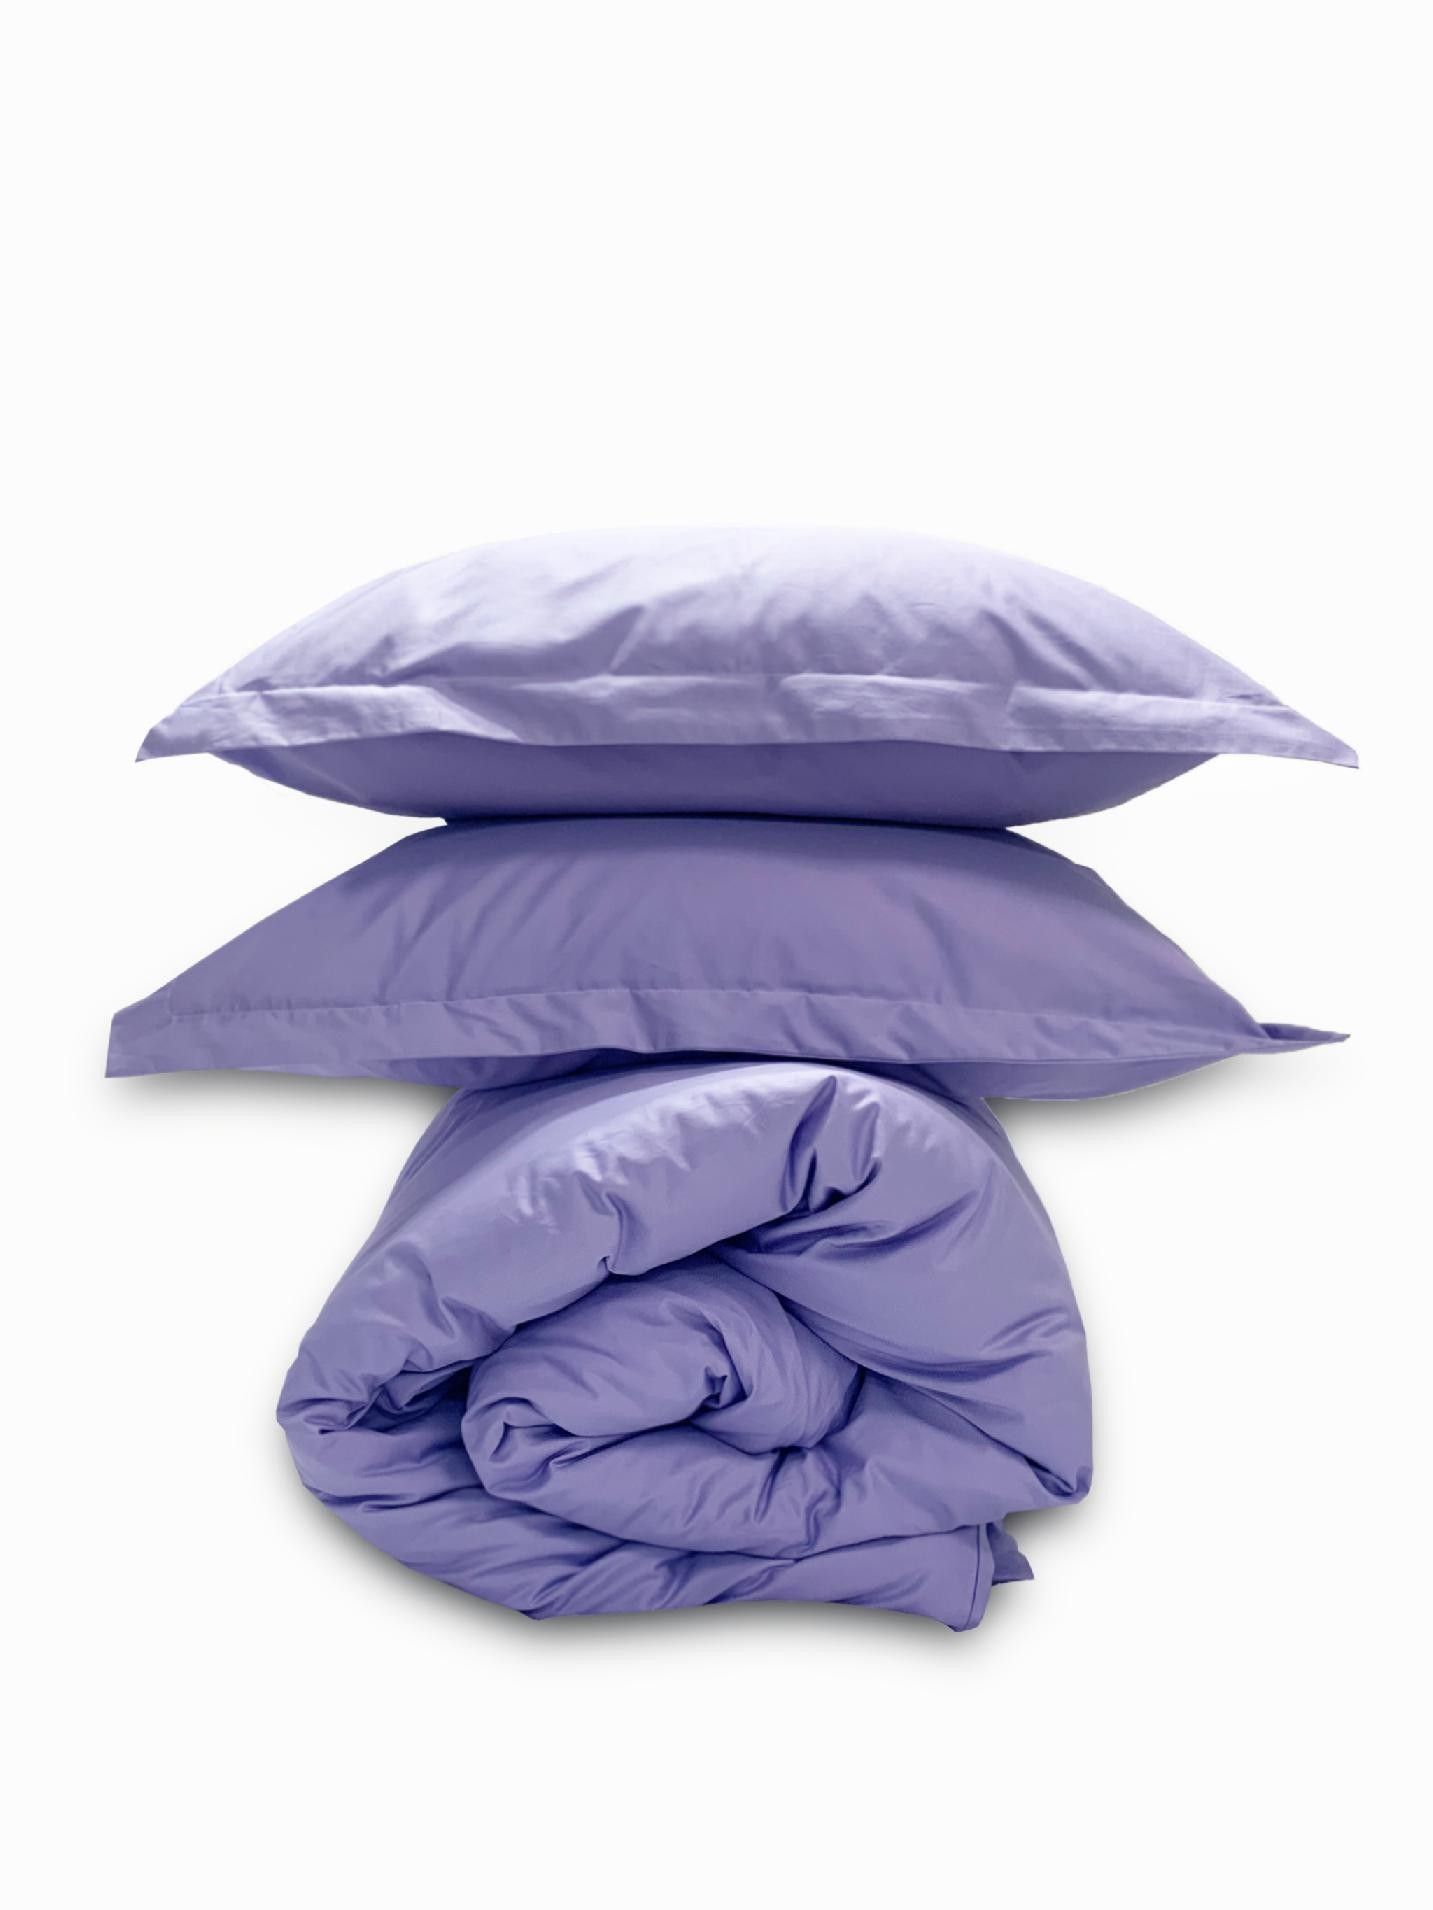 Комплект постельного белья Евро комплект Minimalism Satin Lavender